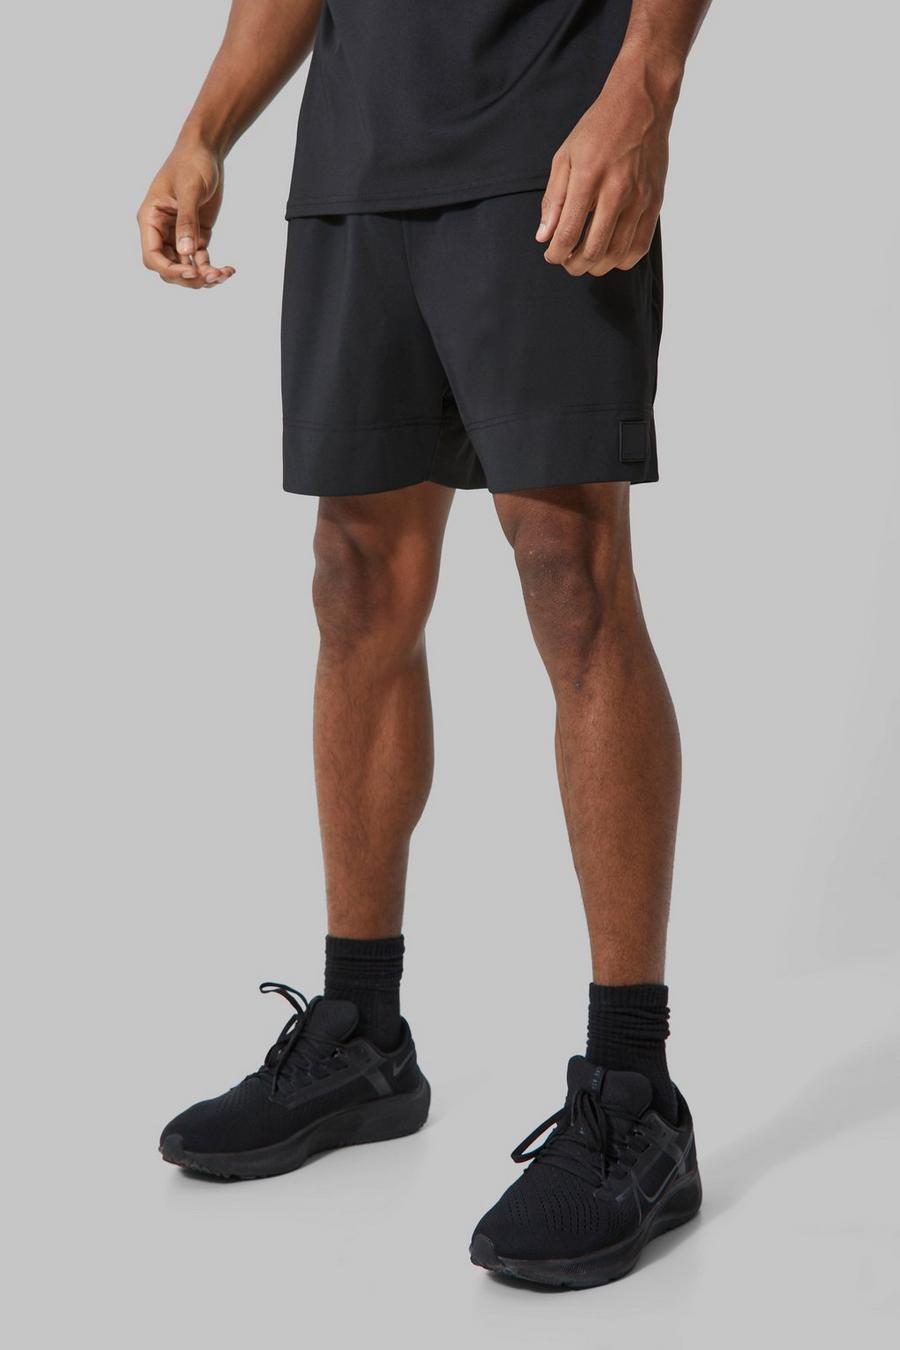 Pantalón corto MAN Active ajustado al músculo, Black image number 1